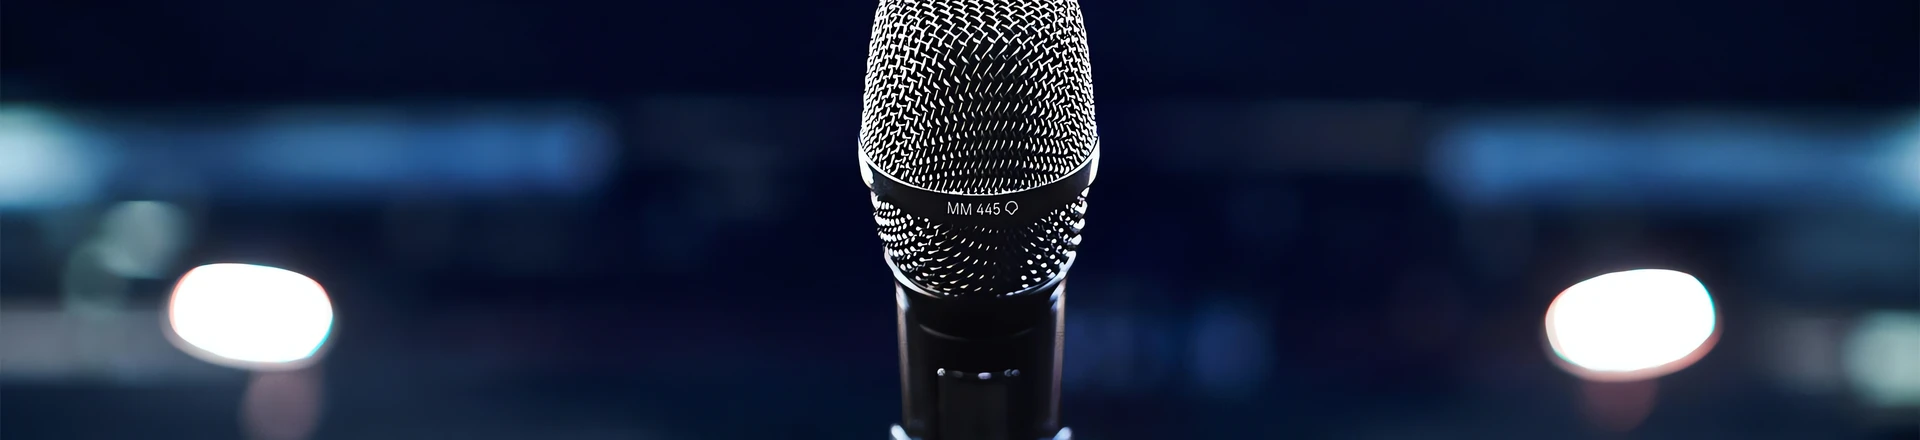 MD 445 i MD 435 - nowe mikrofony wokalowe od Sennheiser